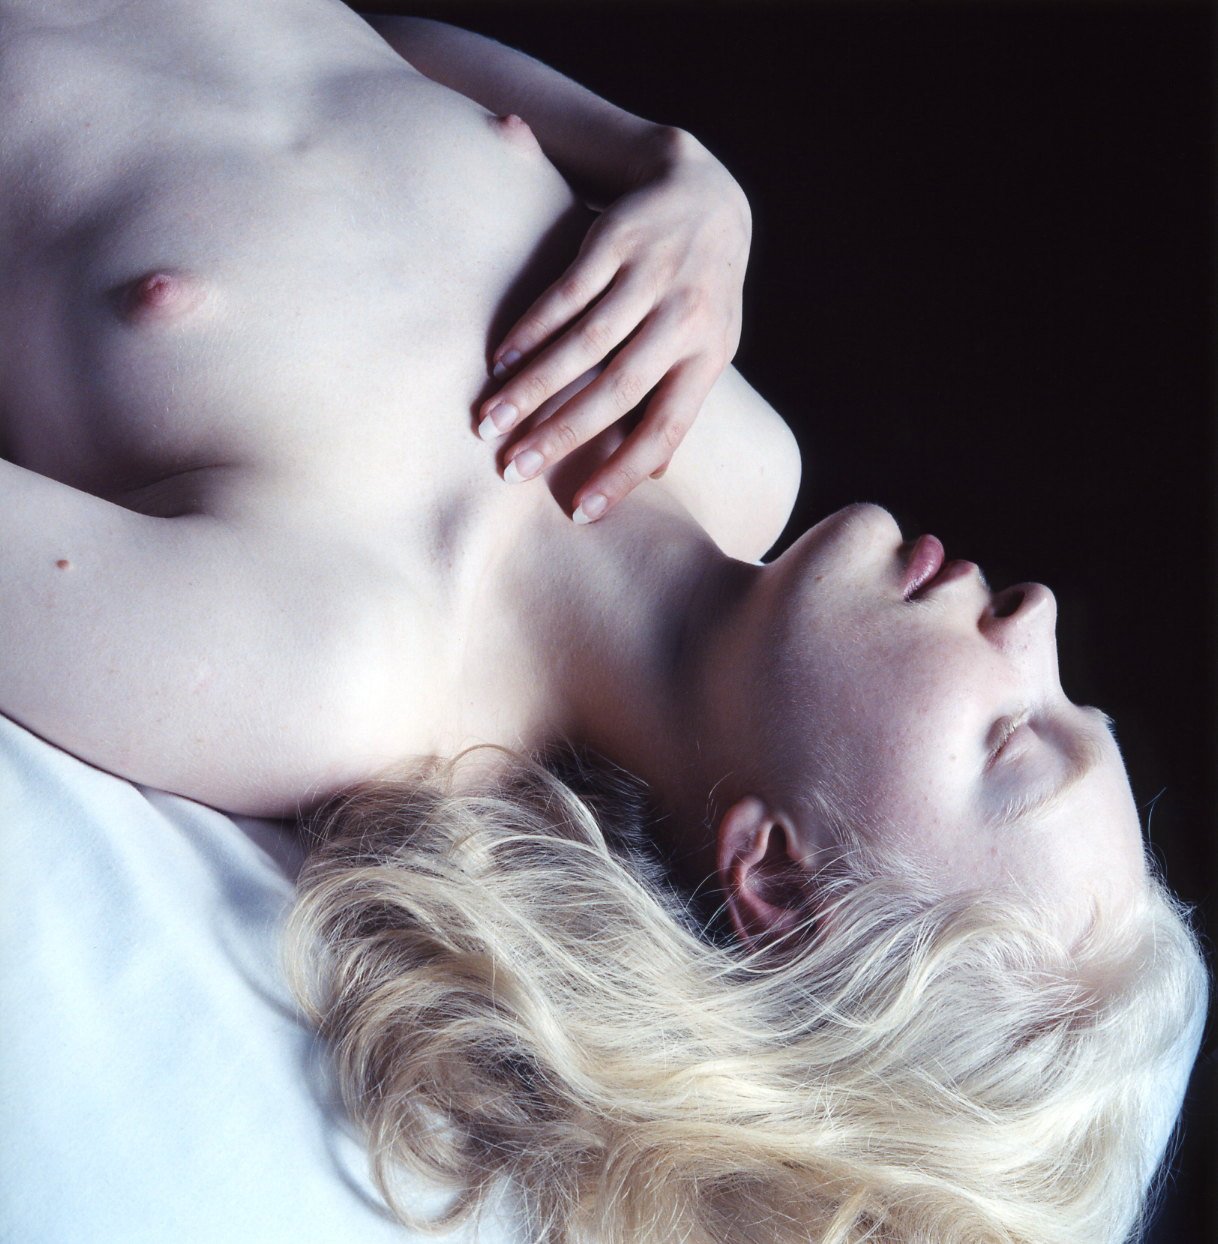 Красивые девушки альбиносы (70 фото) - Порно фото голых деву